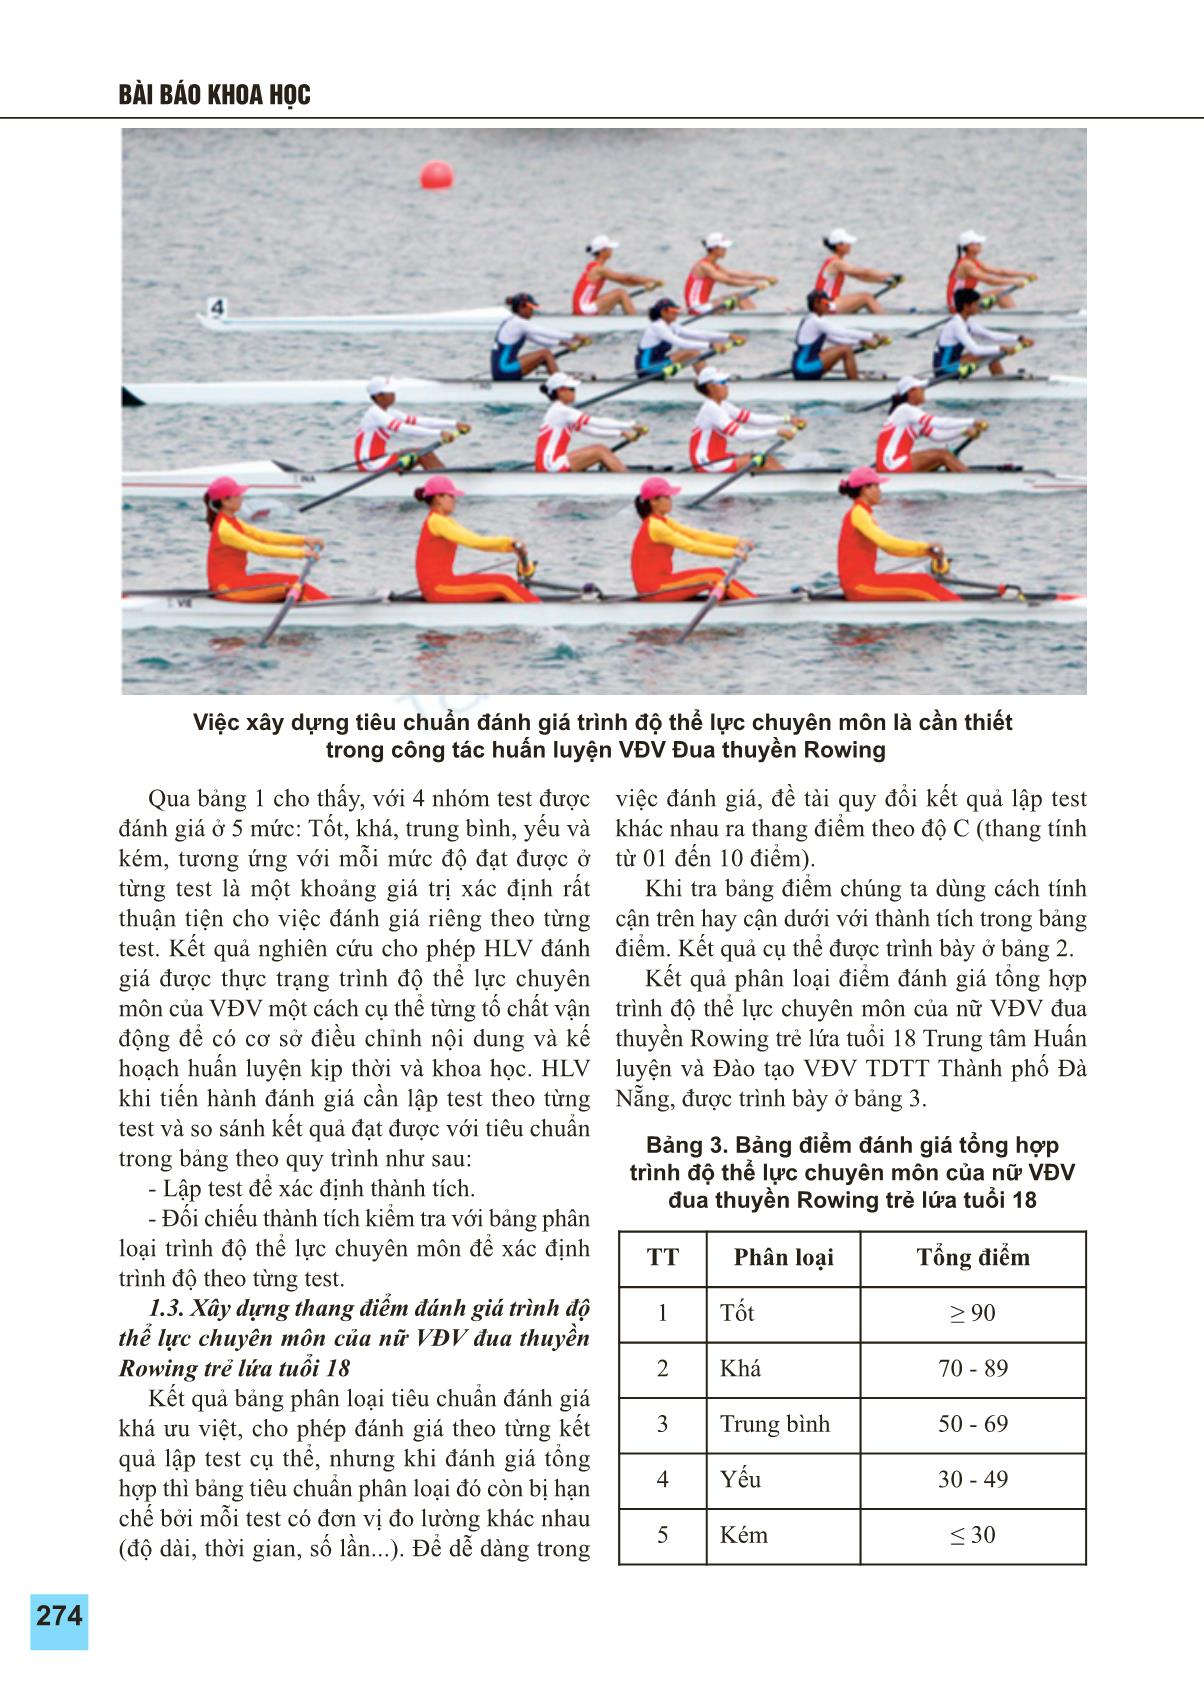 Xây dựng tiêu chuẩn đánh giá trình độ thể lực chuyên môn của nữ vận động viên đua thuyền Rowing trẻ lứa tuổi 18 trung tâm huấn luyện và đào tạo vận động viên thể dục thể thao thành phố Đà Nẵng trang 4